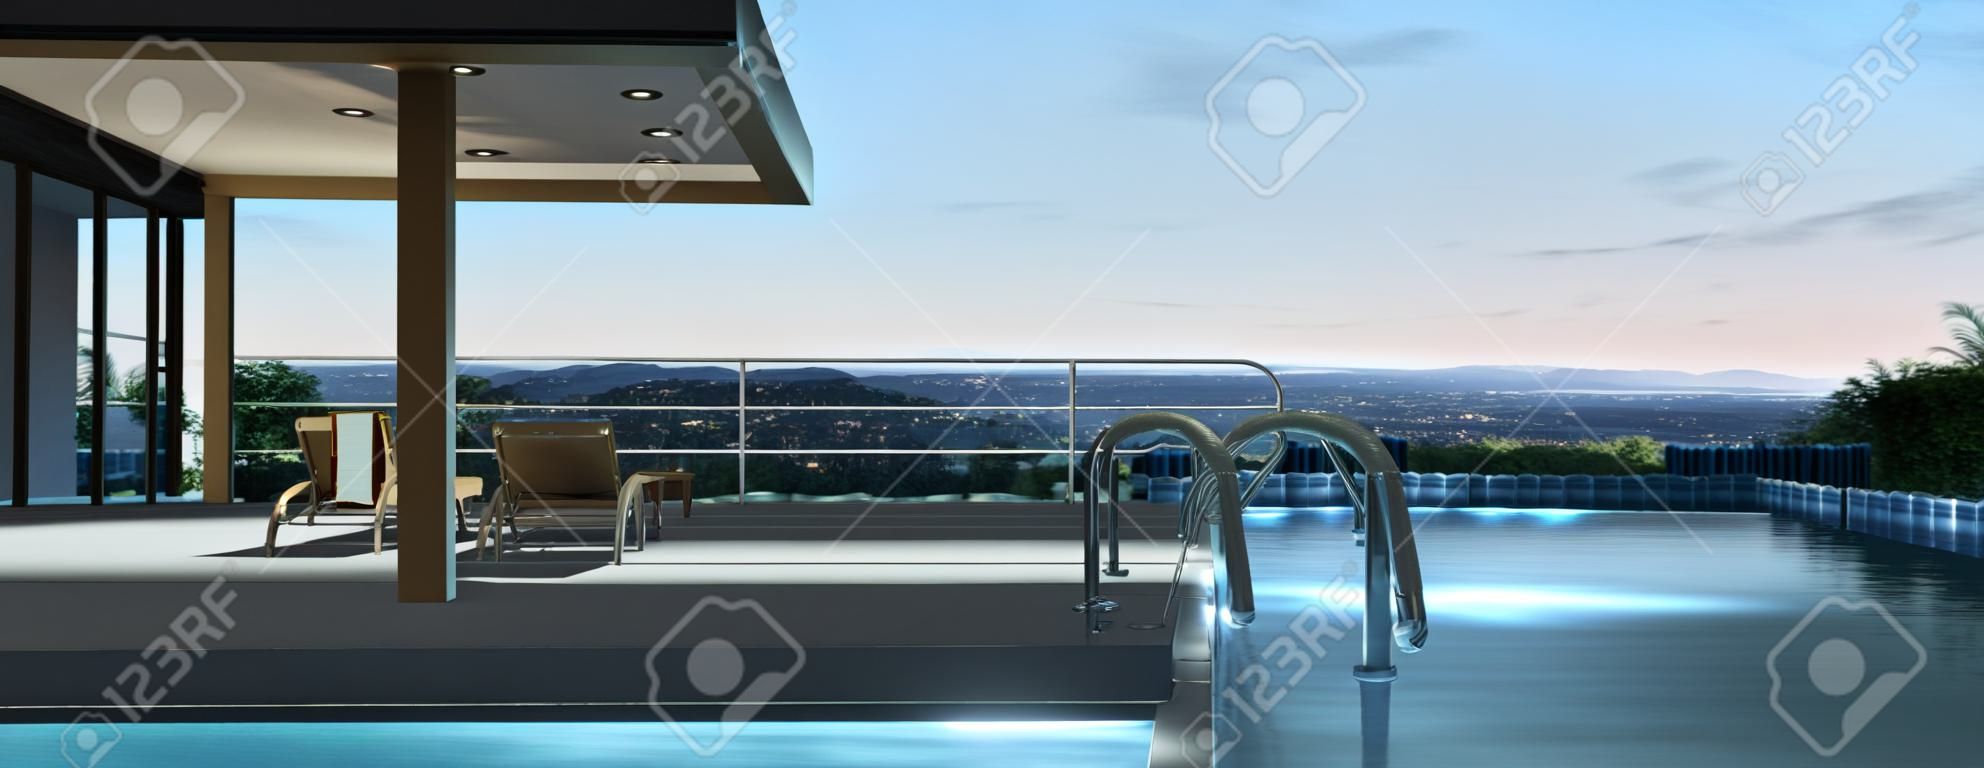 Modernes Haus mit Pool und schöne Aussicht